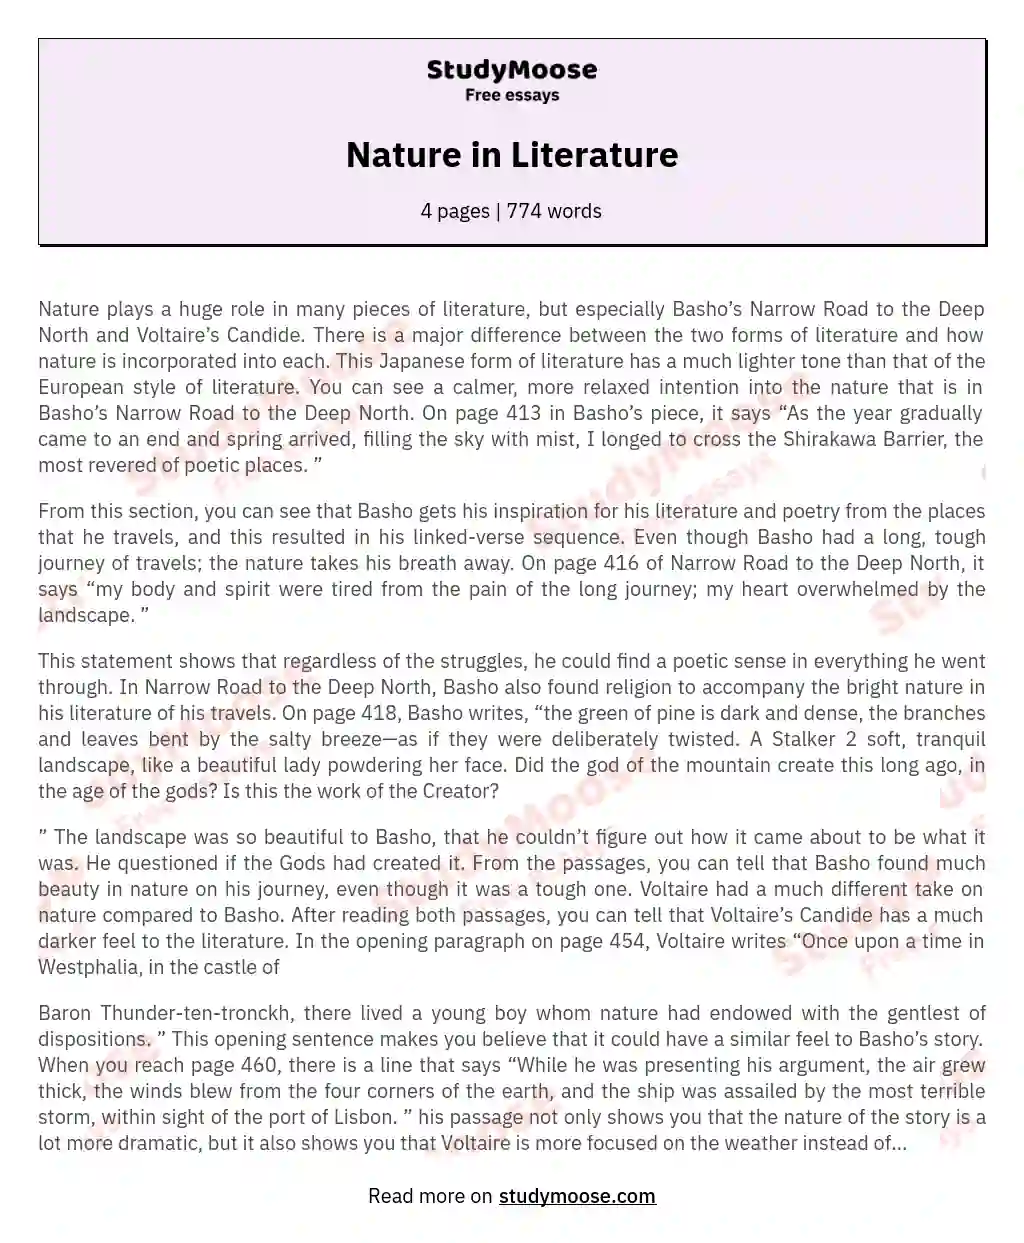 Nature in Literature essay